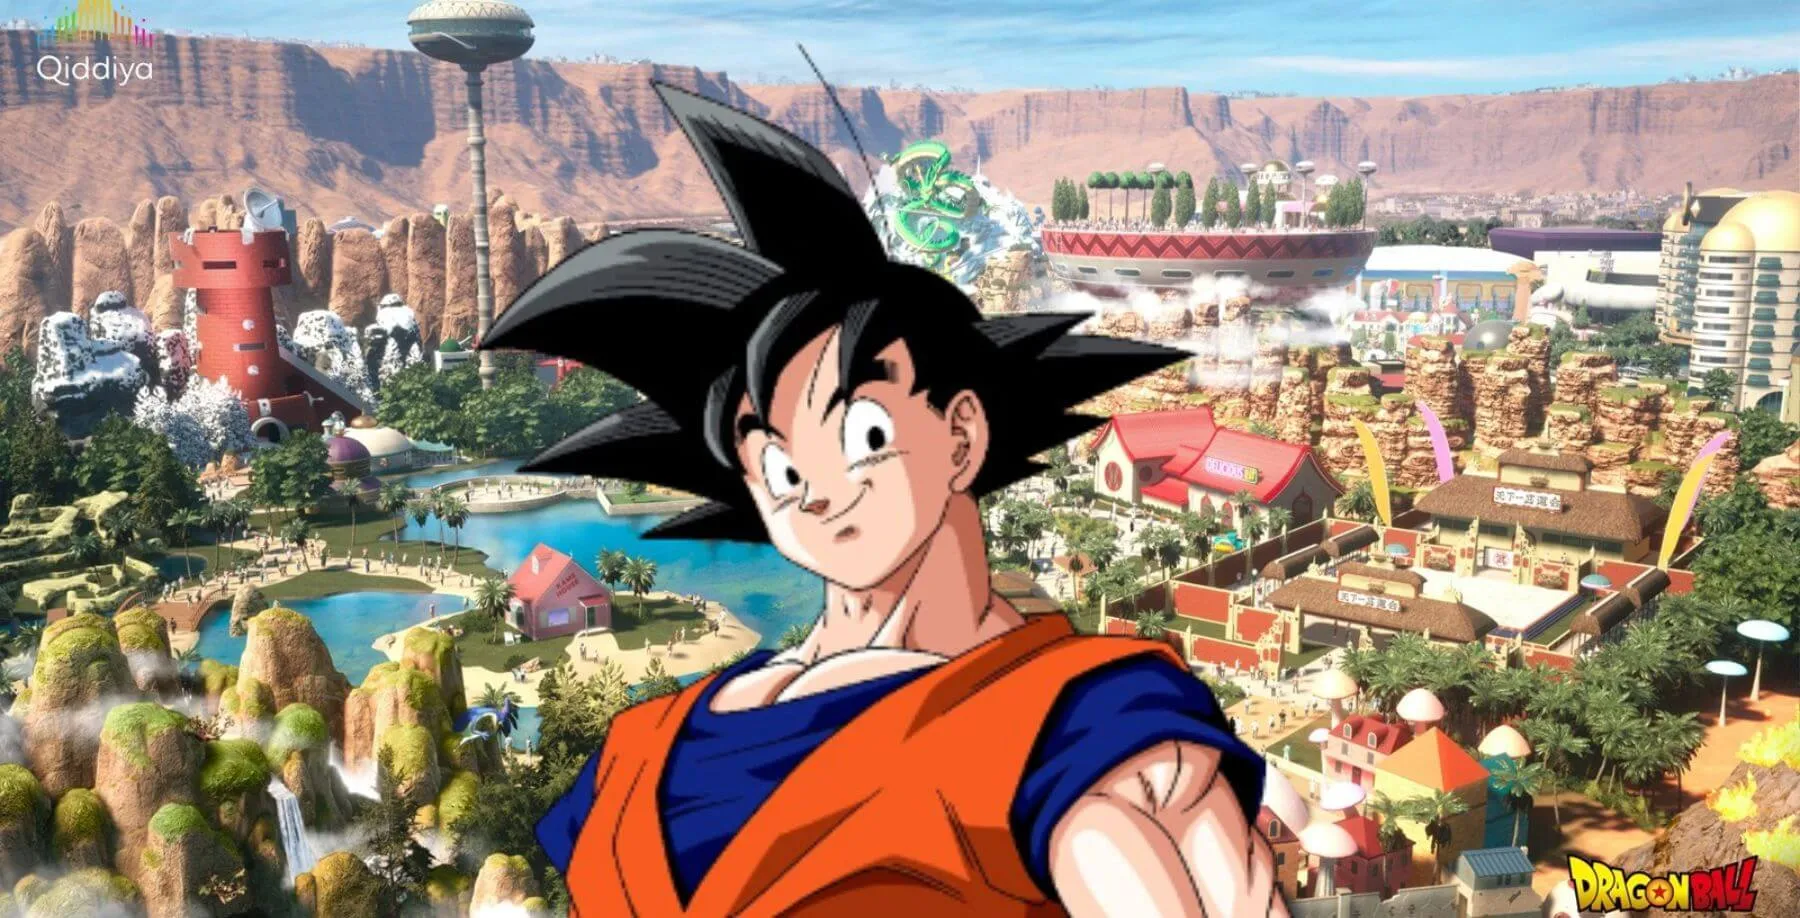 Imagem de fundo relacionado com o parque temático de Dragon Ball e Goku ao centro